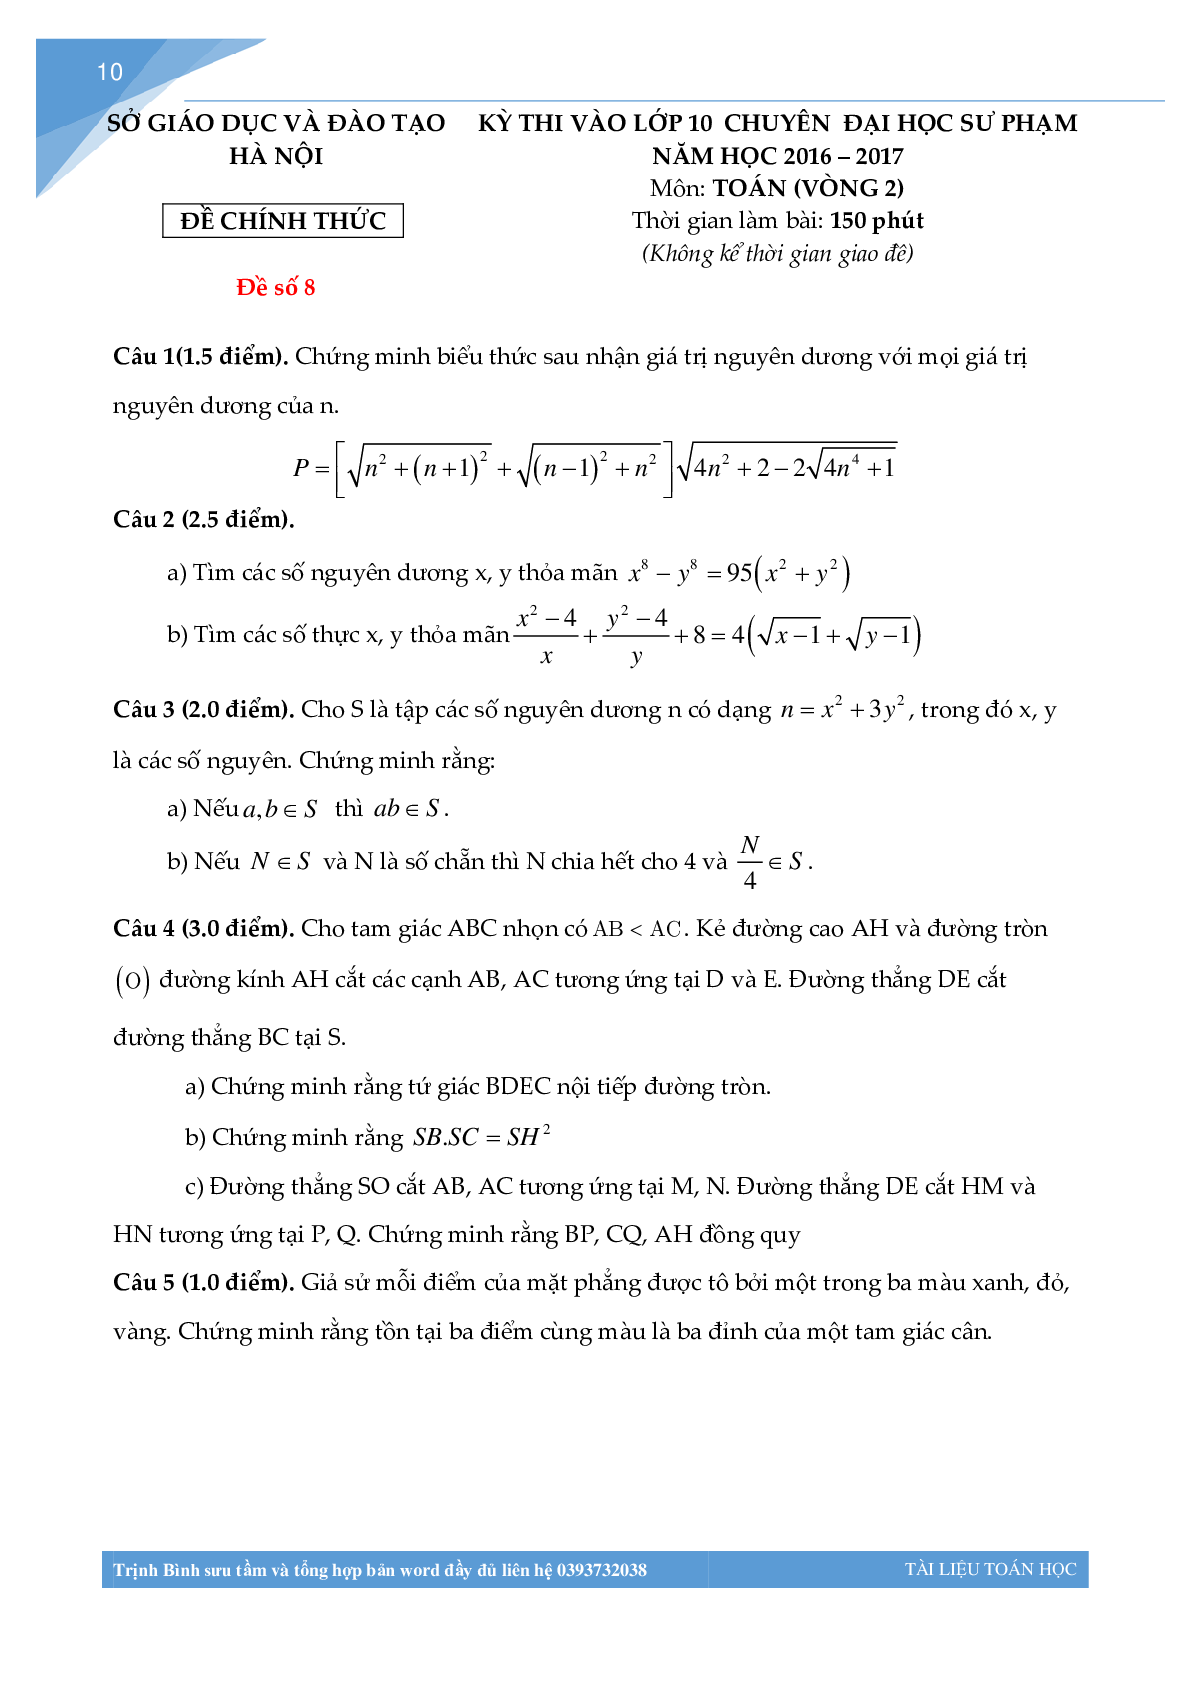 Bộ đề thi toán vào lớp 10 chuyên đại học sư phạm Hà Nội (trang 9)